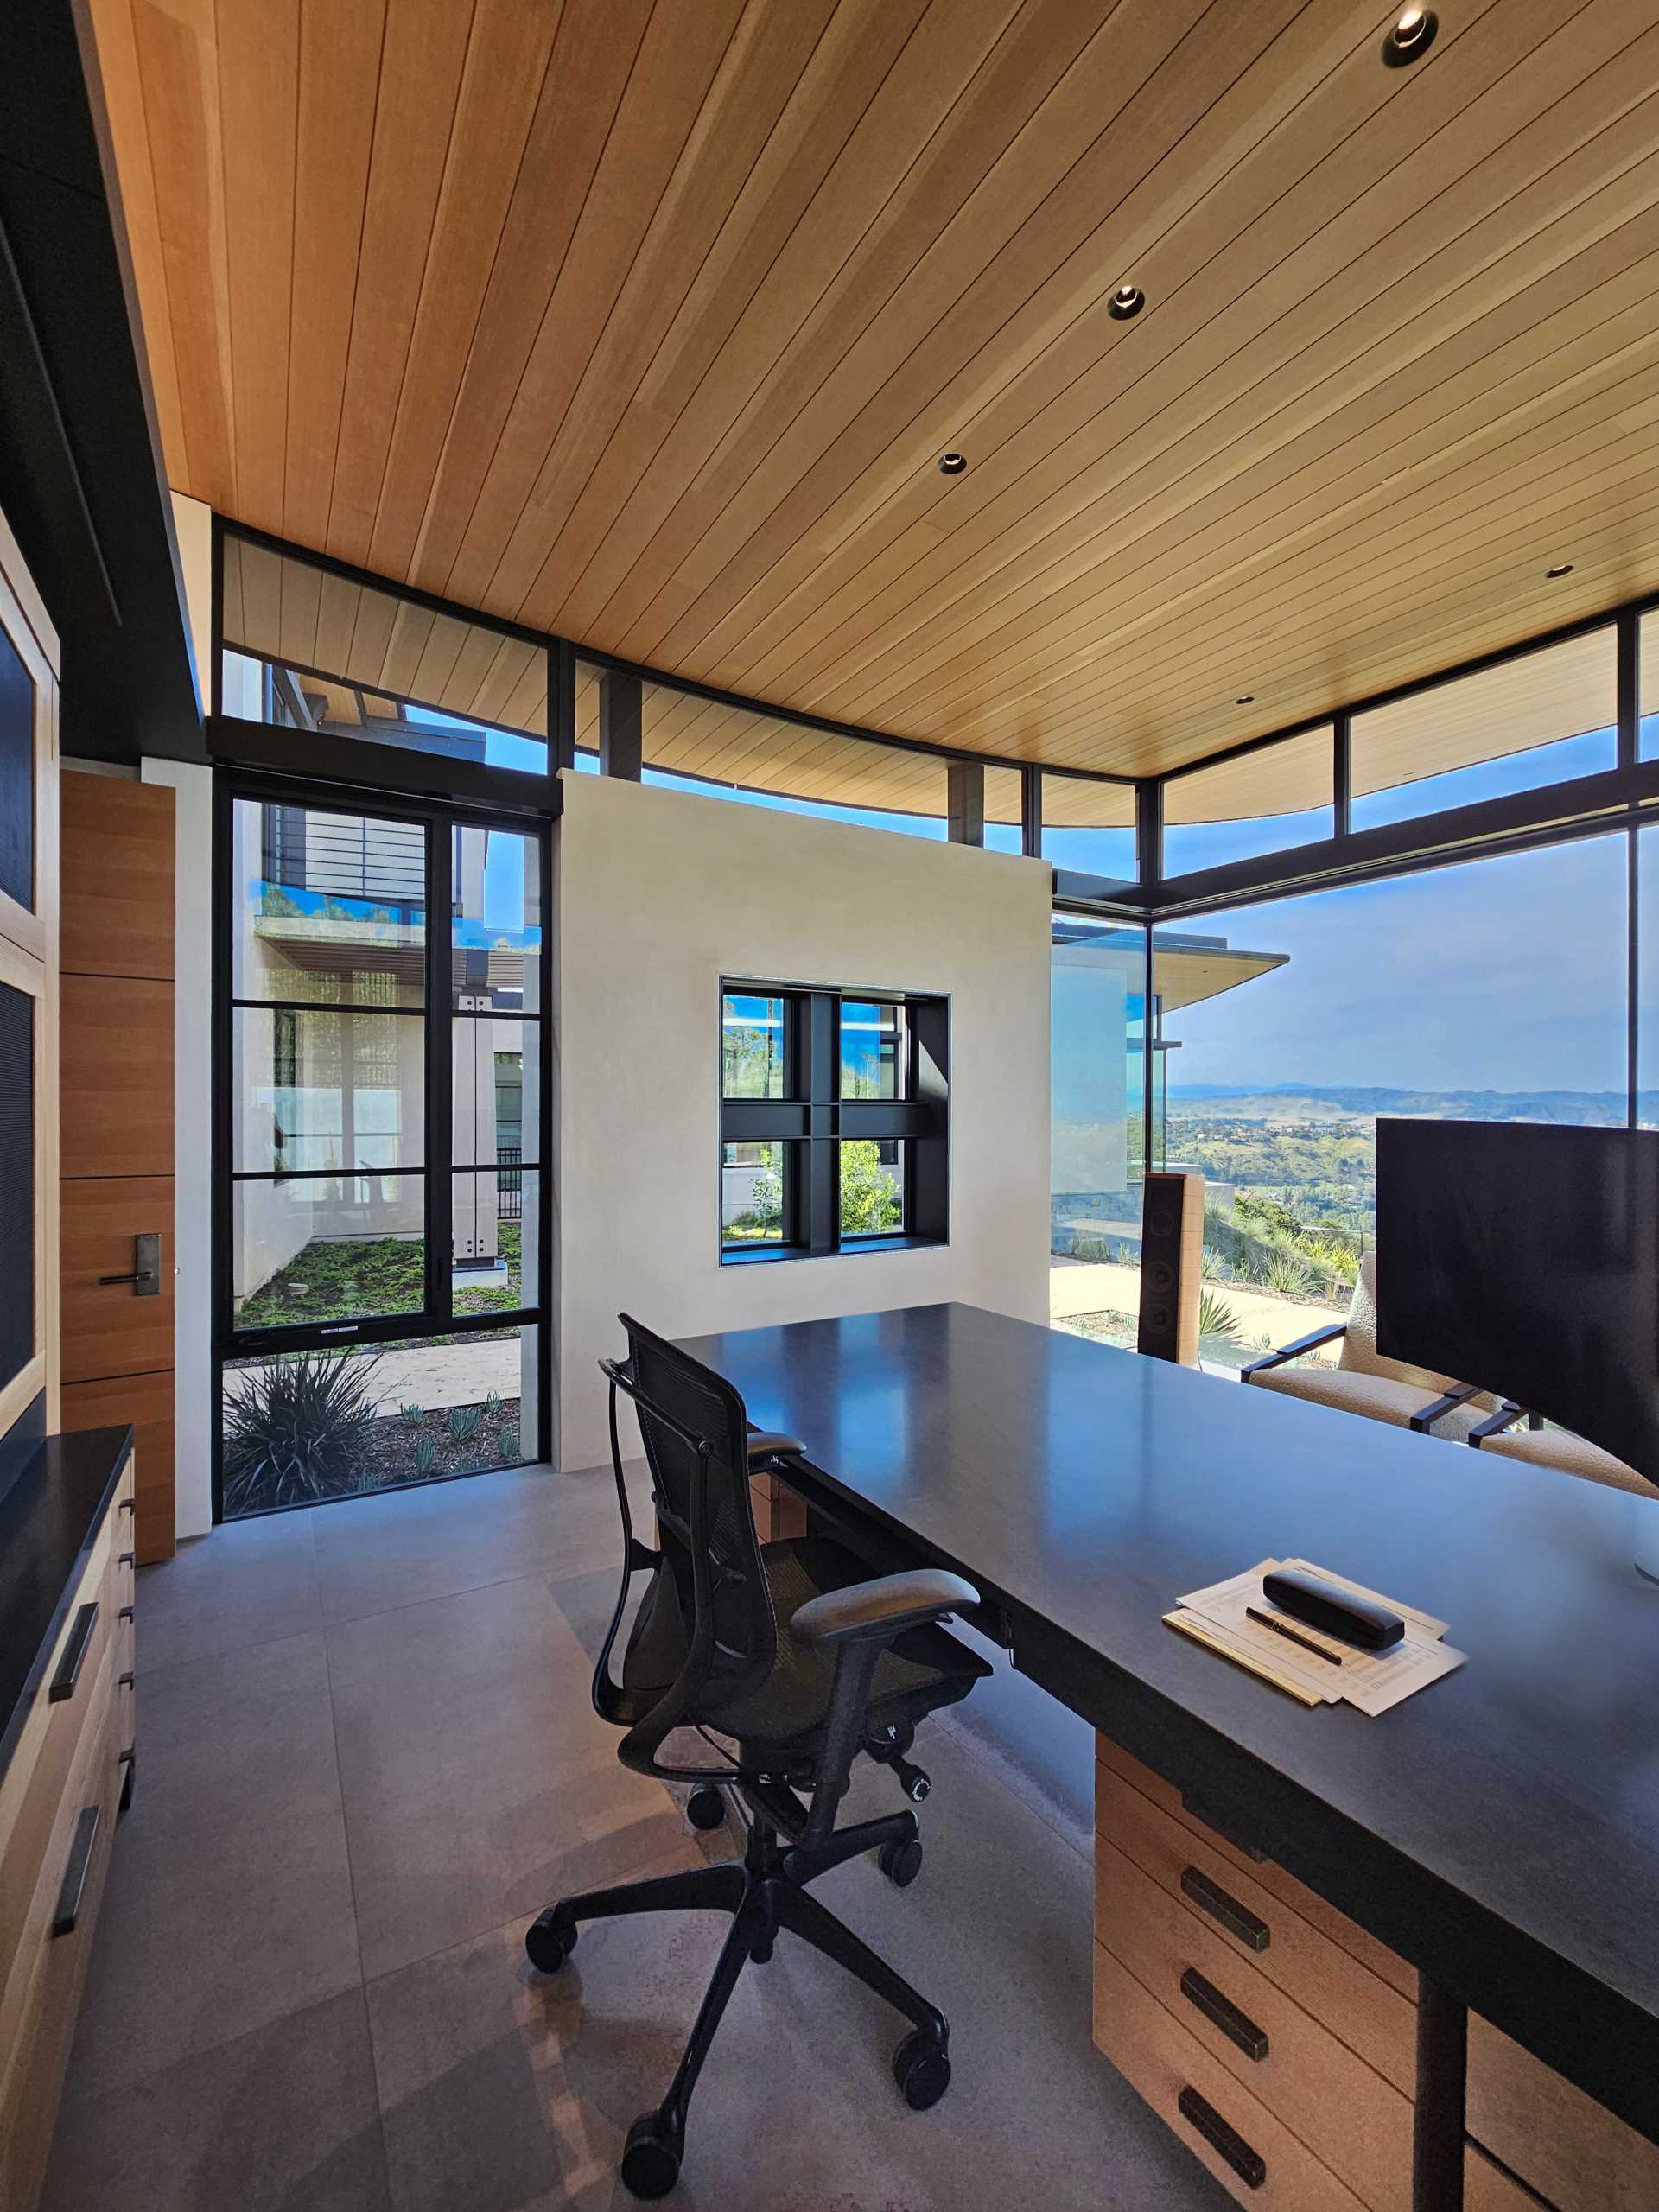 Un birou modern de acasă, cu ferestre din podea până în tavan, oferă lumină naturală și vederi extinse.